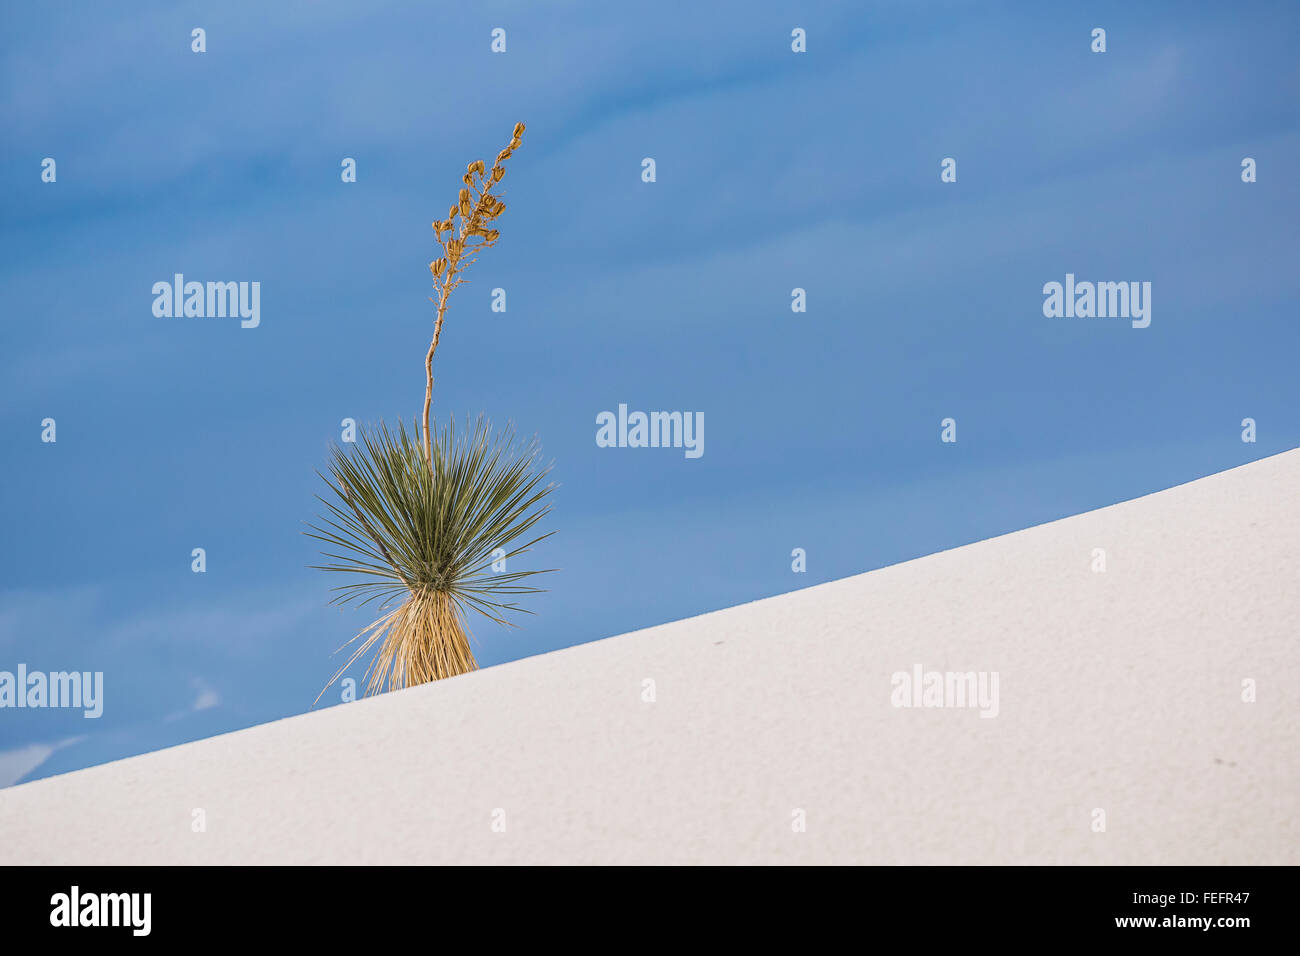 La yuca crece en las dunas de yeso en el White Sands National Monument en la cuenca de Tularosa, Nuevo México, EE.UU. Foto de stock